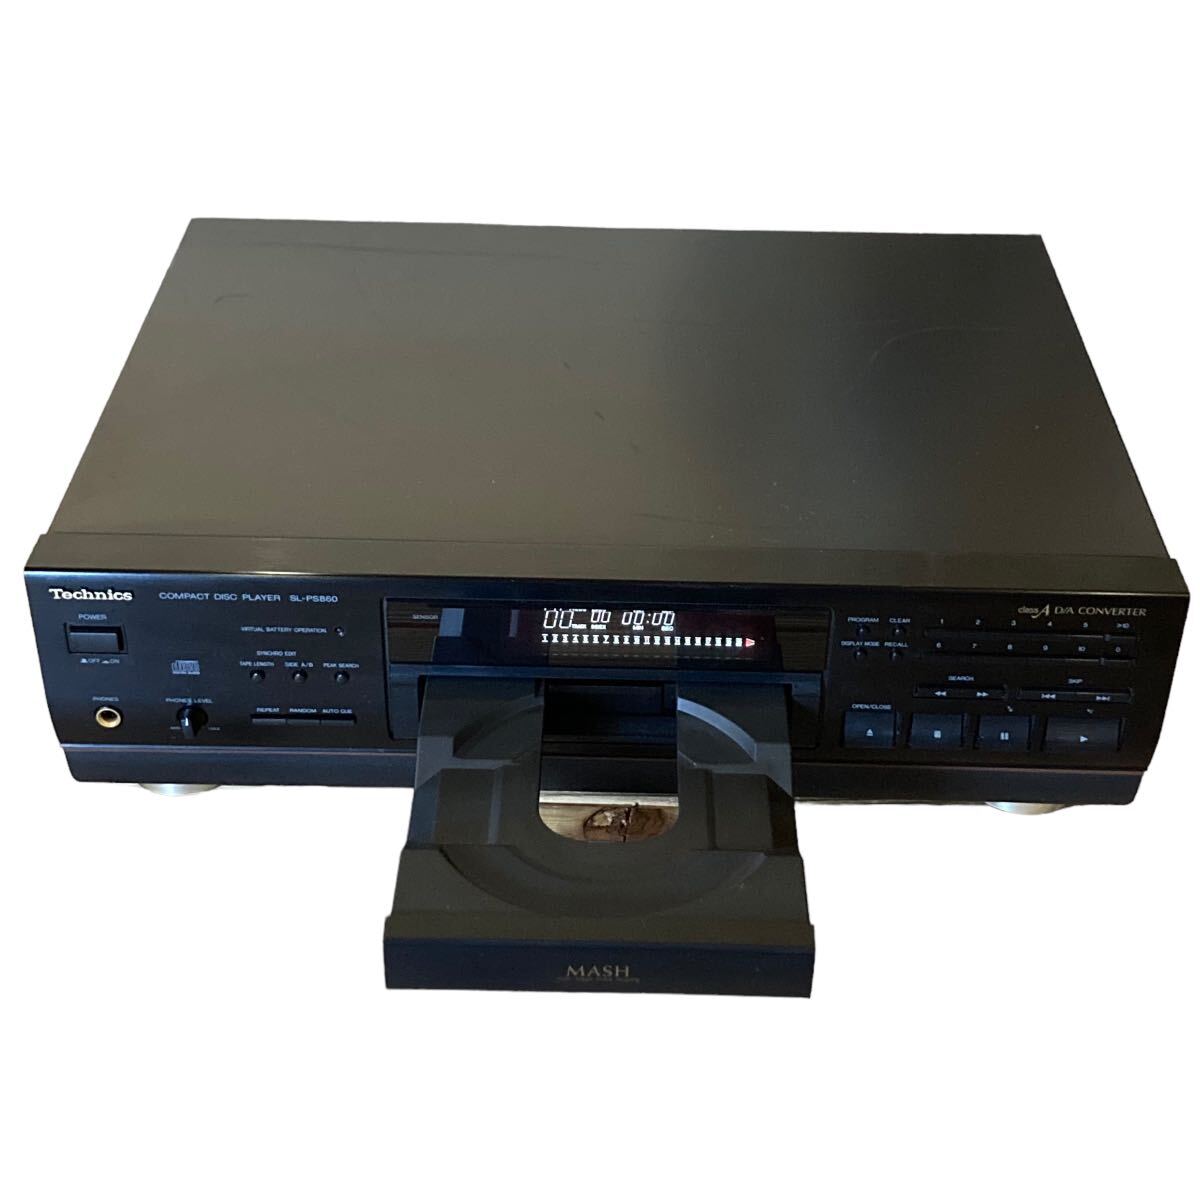 Technics SL-PS860 CD player テクニクス CDプレーヤーの画像2